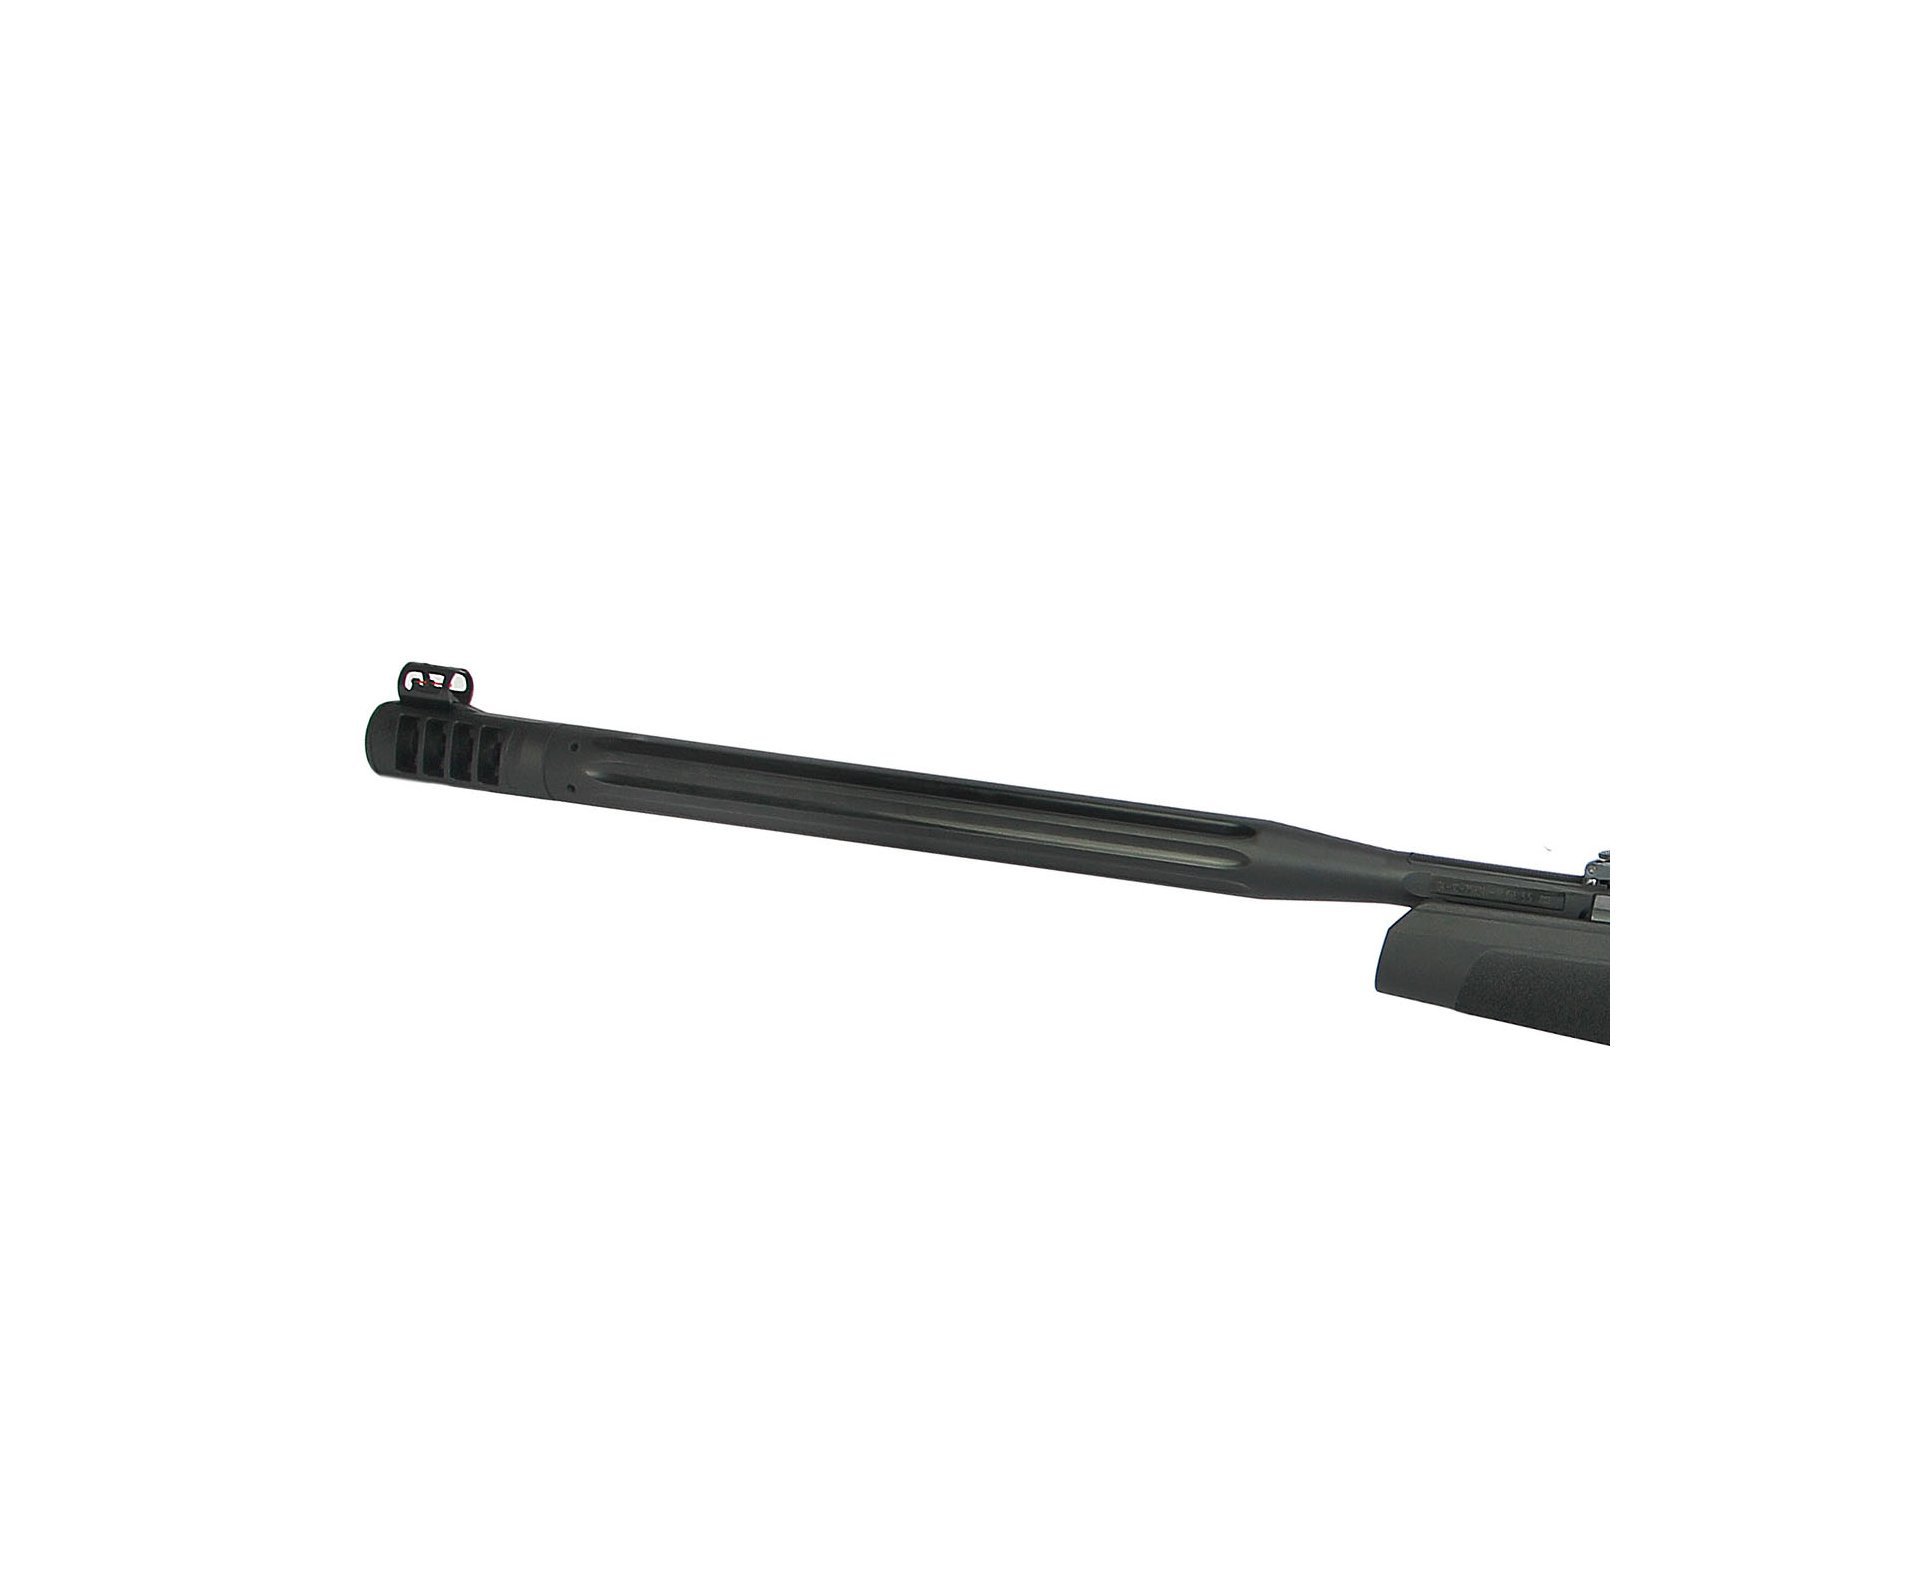 Carabina De Pressão Gamo Maxxim Igt Mach 1 Black Polímero 5,5mm